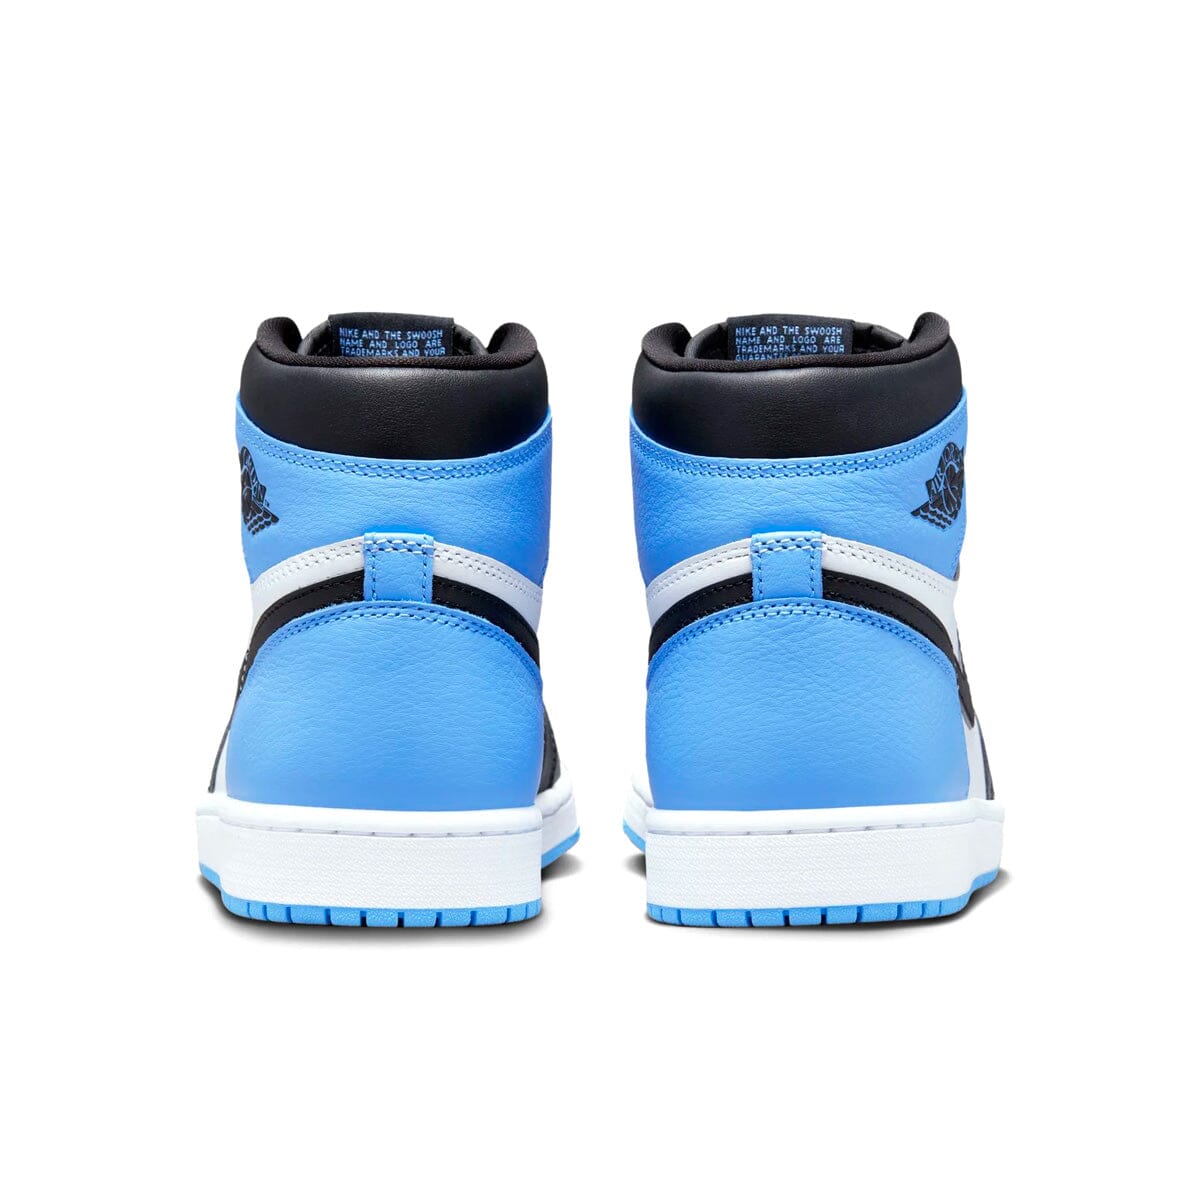 Air Jordan 1 High UNC Toe Air Jordan 1 High Blizz Sneakers 